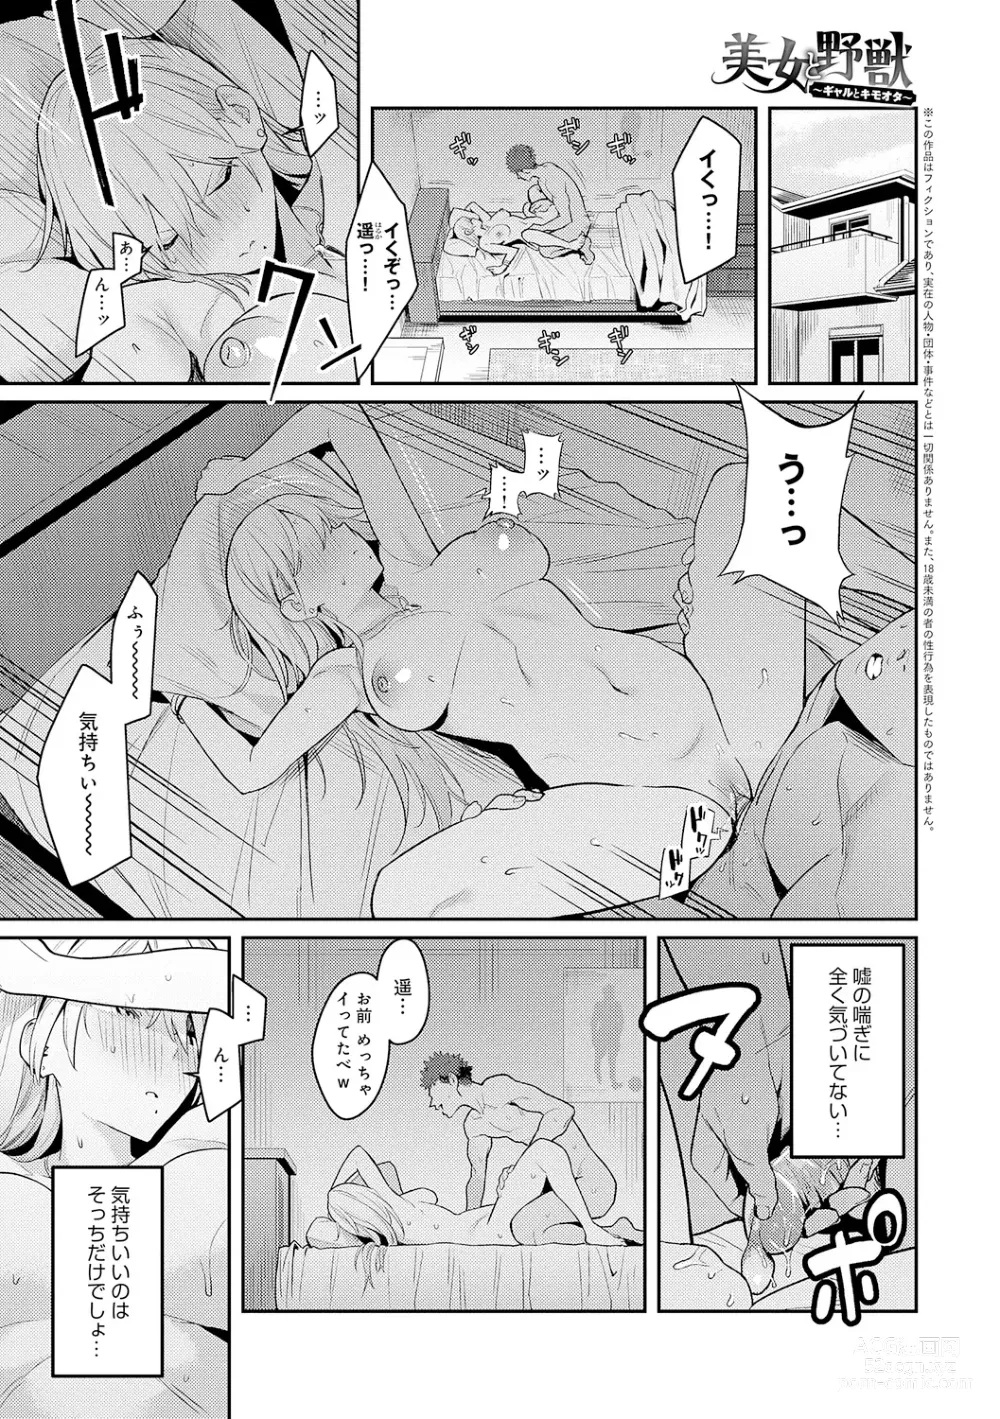 Page 5 of manga Seiyoku Tsuyo Tsuyo + Extra (decensored)